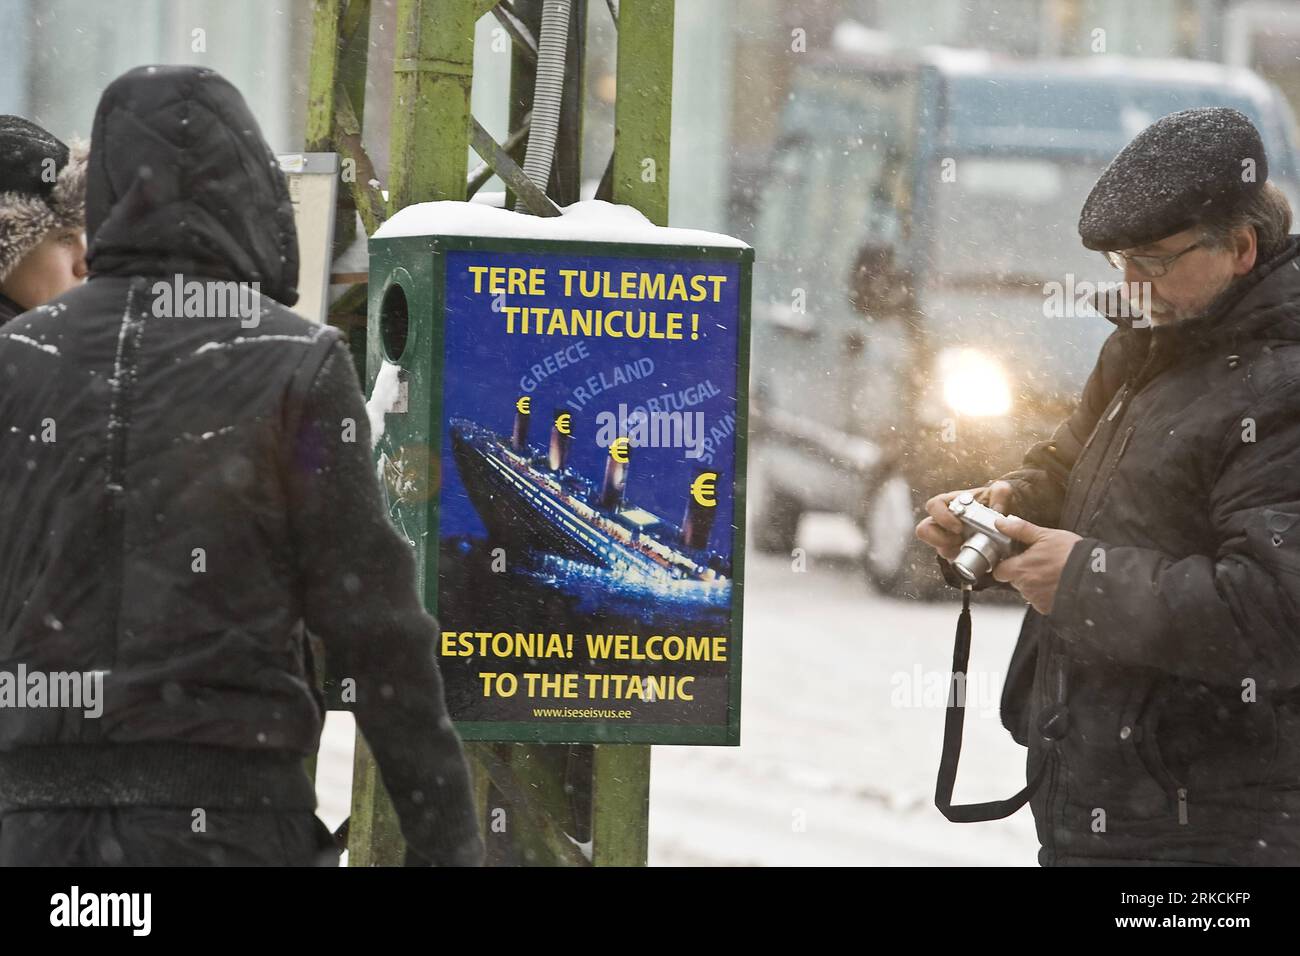 Bildnummer: 54777785 Datum: 31.12.2010 Copyright: imago/Xinhua (101231) -- TALLIN, Dez. 31, 2010 (Xinhua) -- Bürger stehen auf einem Plakat gegen den Euro in einer Straße in Tallin, Hauptstadt Estlands, 31. Dez. 2010. Estland wird das 17. Land der Europäischen Union (EU) sein, das am Samstag Euro verwendet, zu einer Zeit, in der die Eurozone noch immer in einer Schuldenkrise steckt. (Xinhua/Karli Saul) (cl) ESTLAND-EURO-POSTER PUBLICATIONxNOTxINxCHN Gesellschaft Jahreszeit Winter Kulturhauptstadt kbdig xmk 2010 quer o0 Objekte, Plakat, Währung, Währungsumstellung, Umstellung, Währungsreform, Wirtschaft, Protest, Titanic, kur Stockfoto